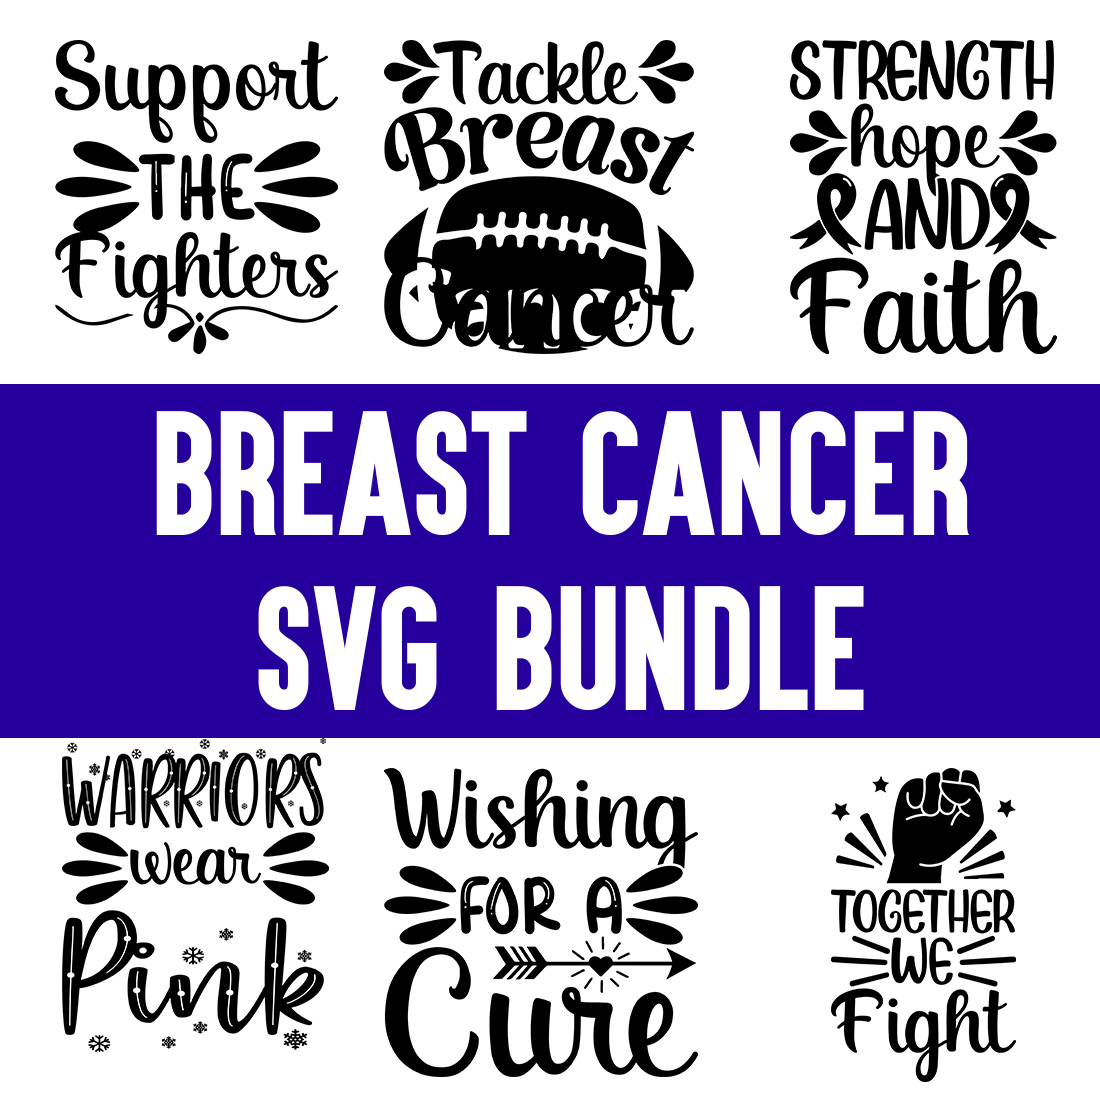 Breast Cancer svg Bundle cover image.